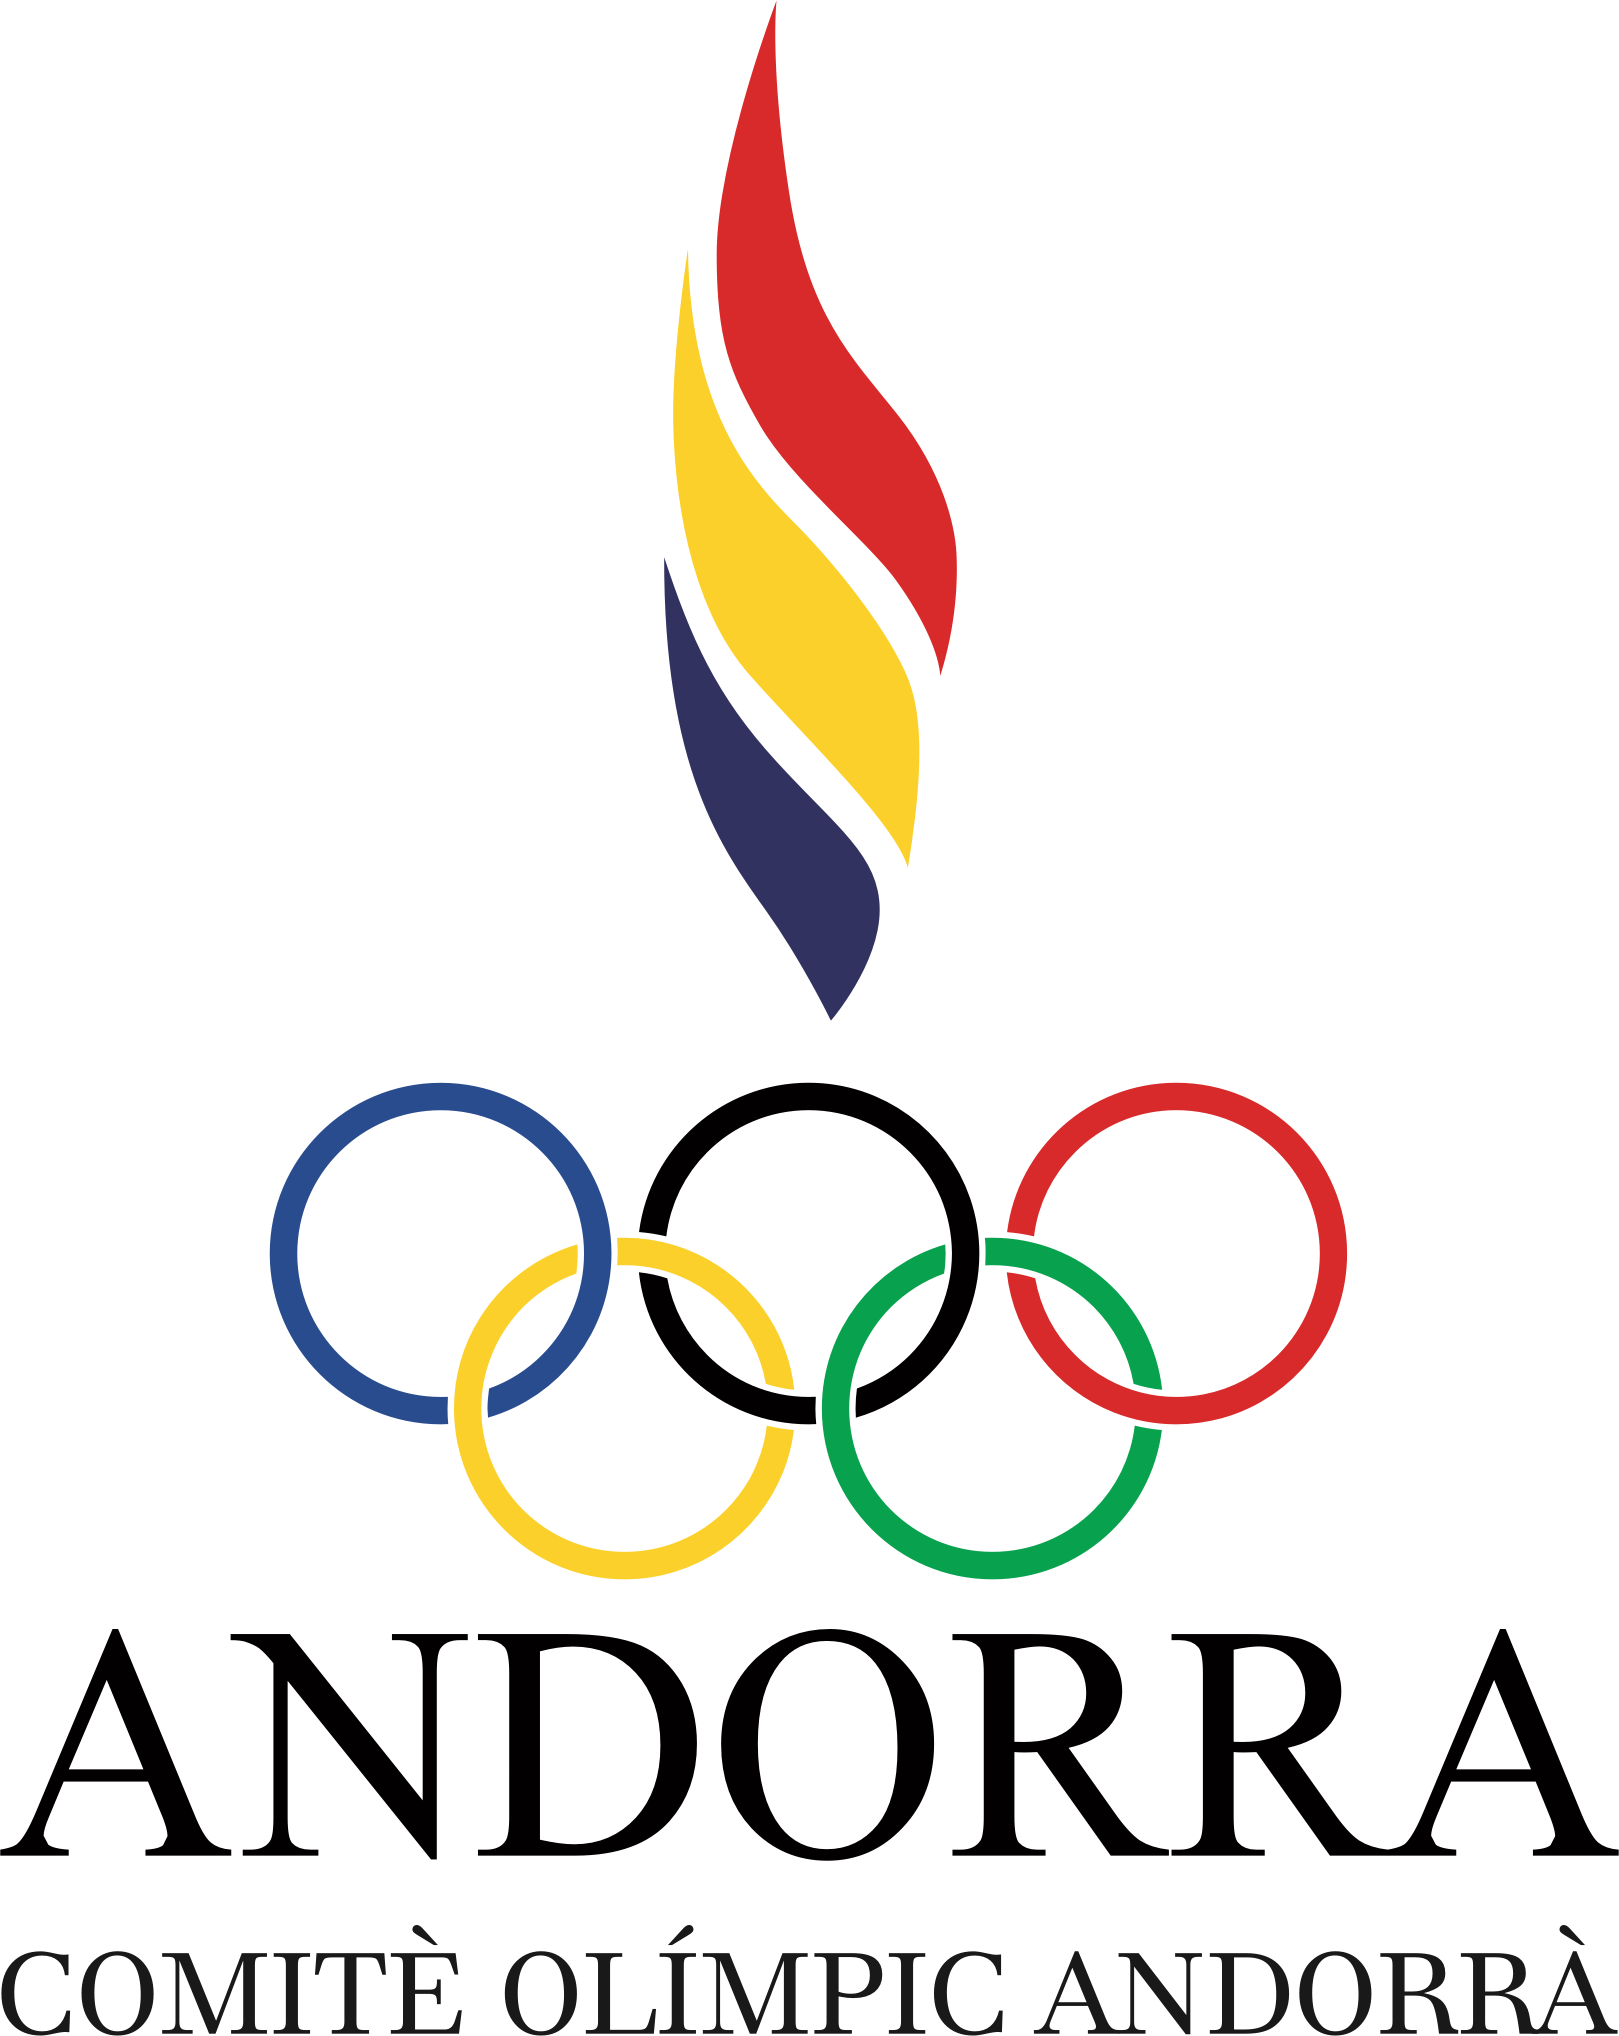 Comite Olimpico Andorrano